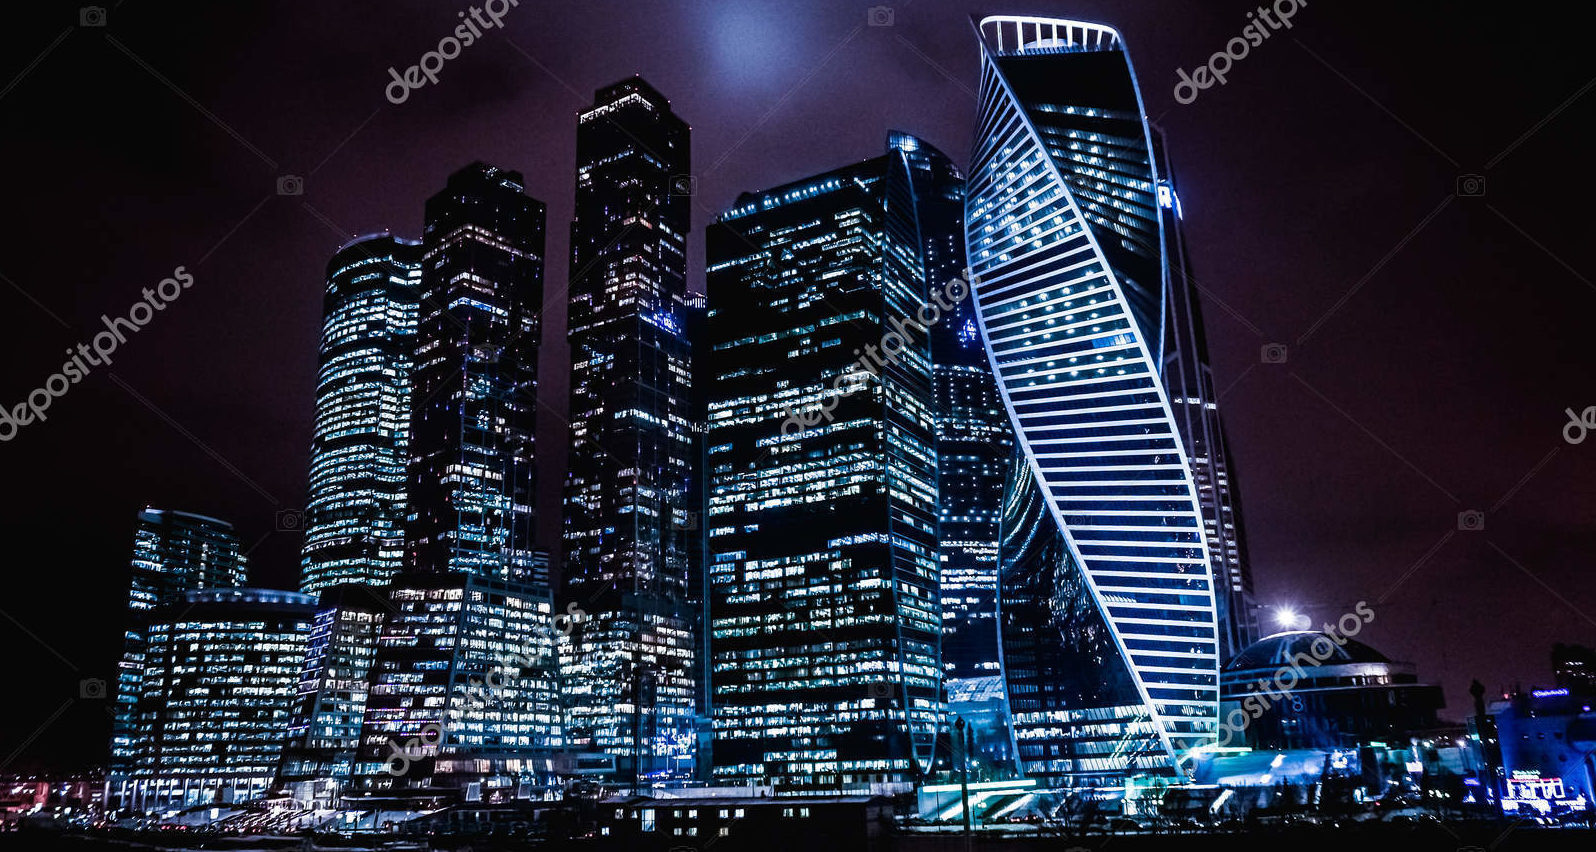 Москва Сити ночью